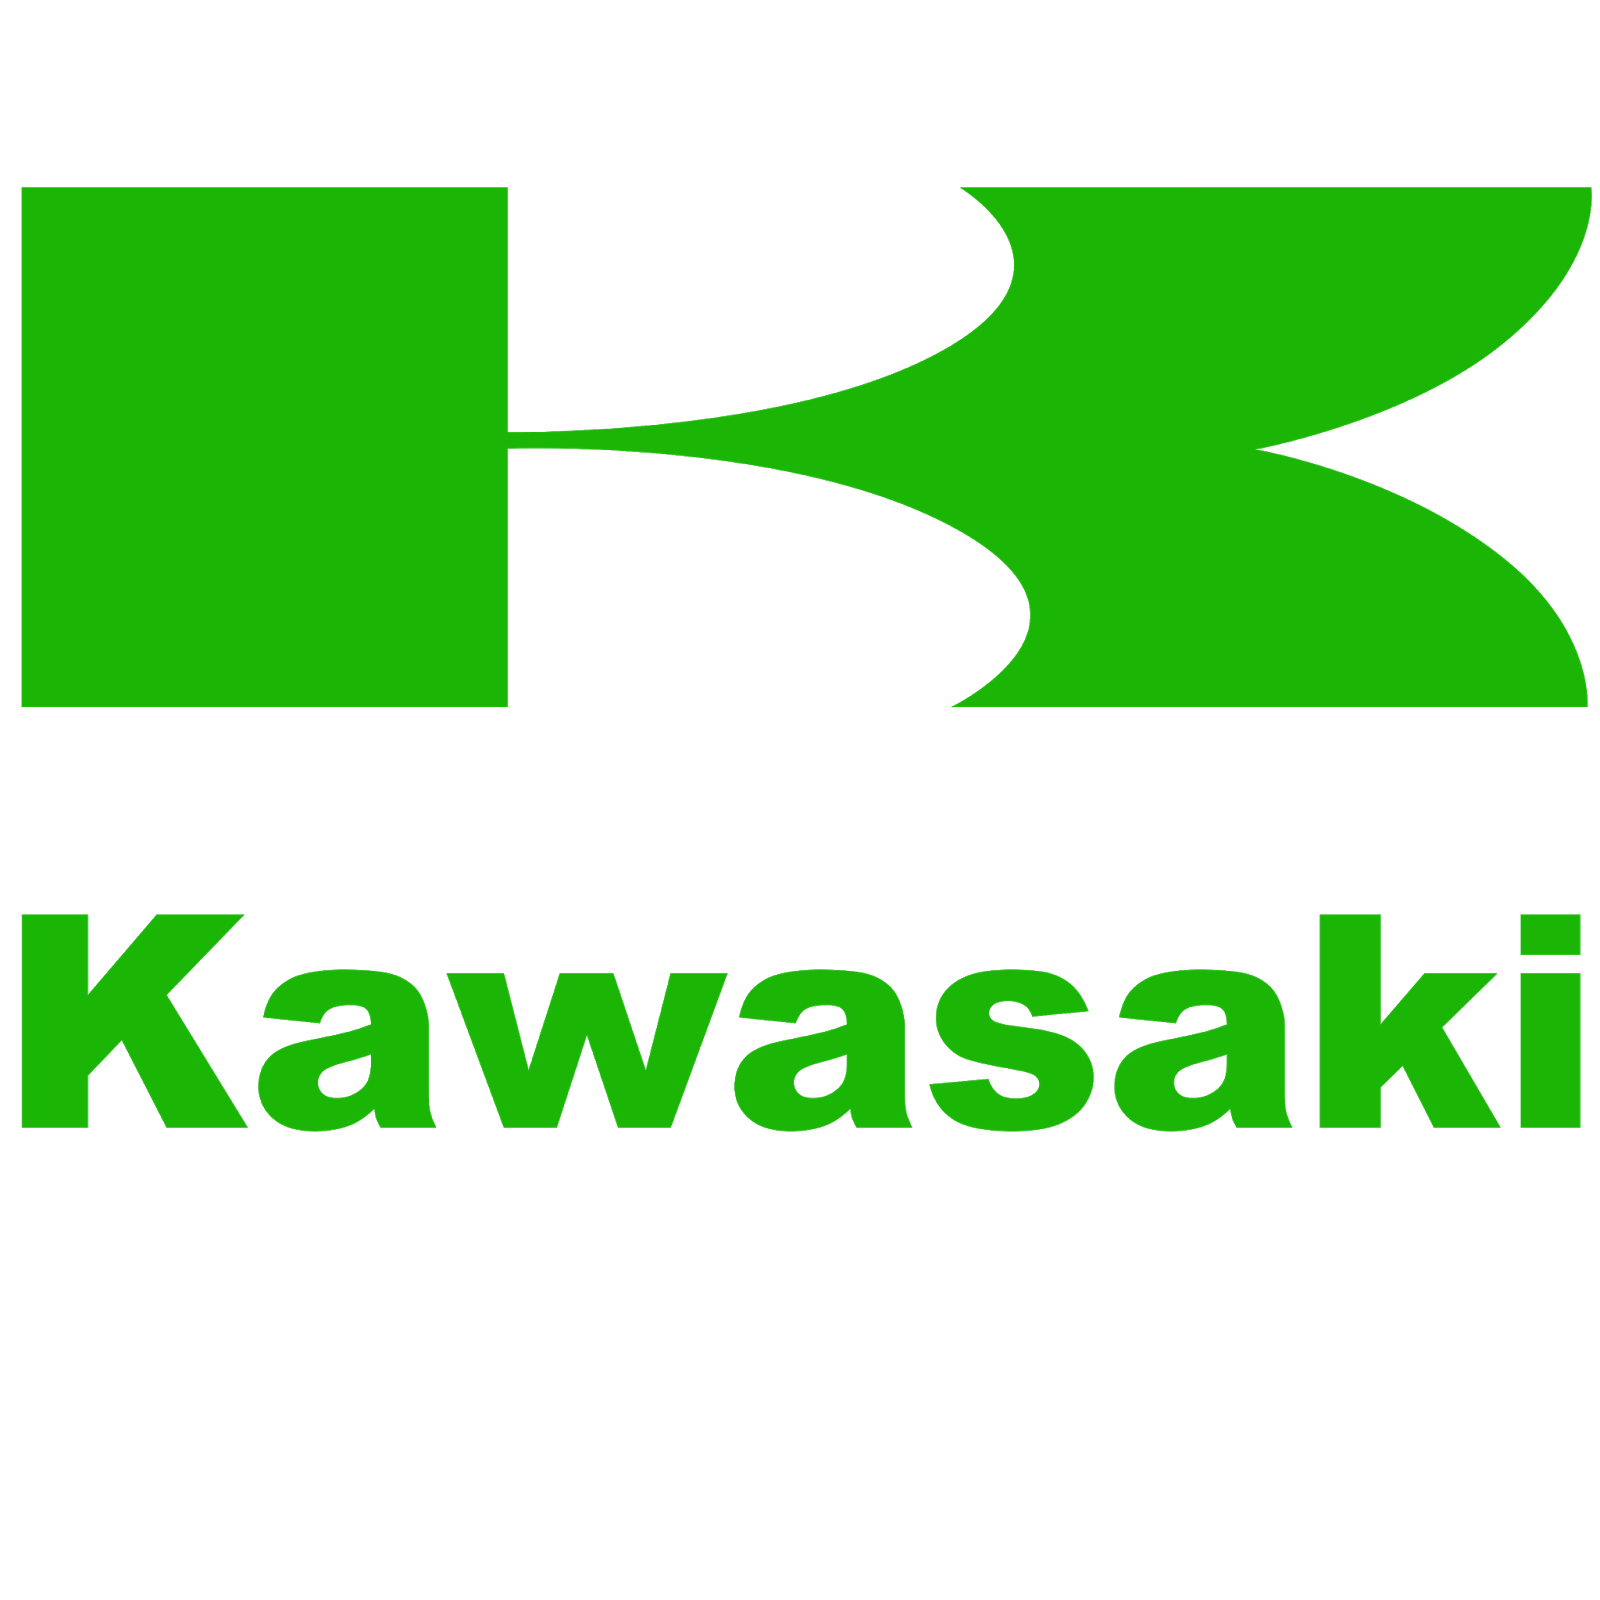 Motor Kawasaki Logo.png